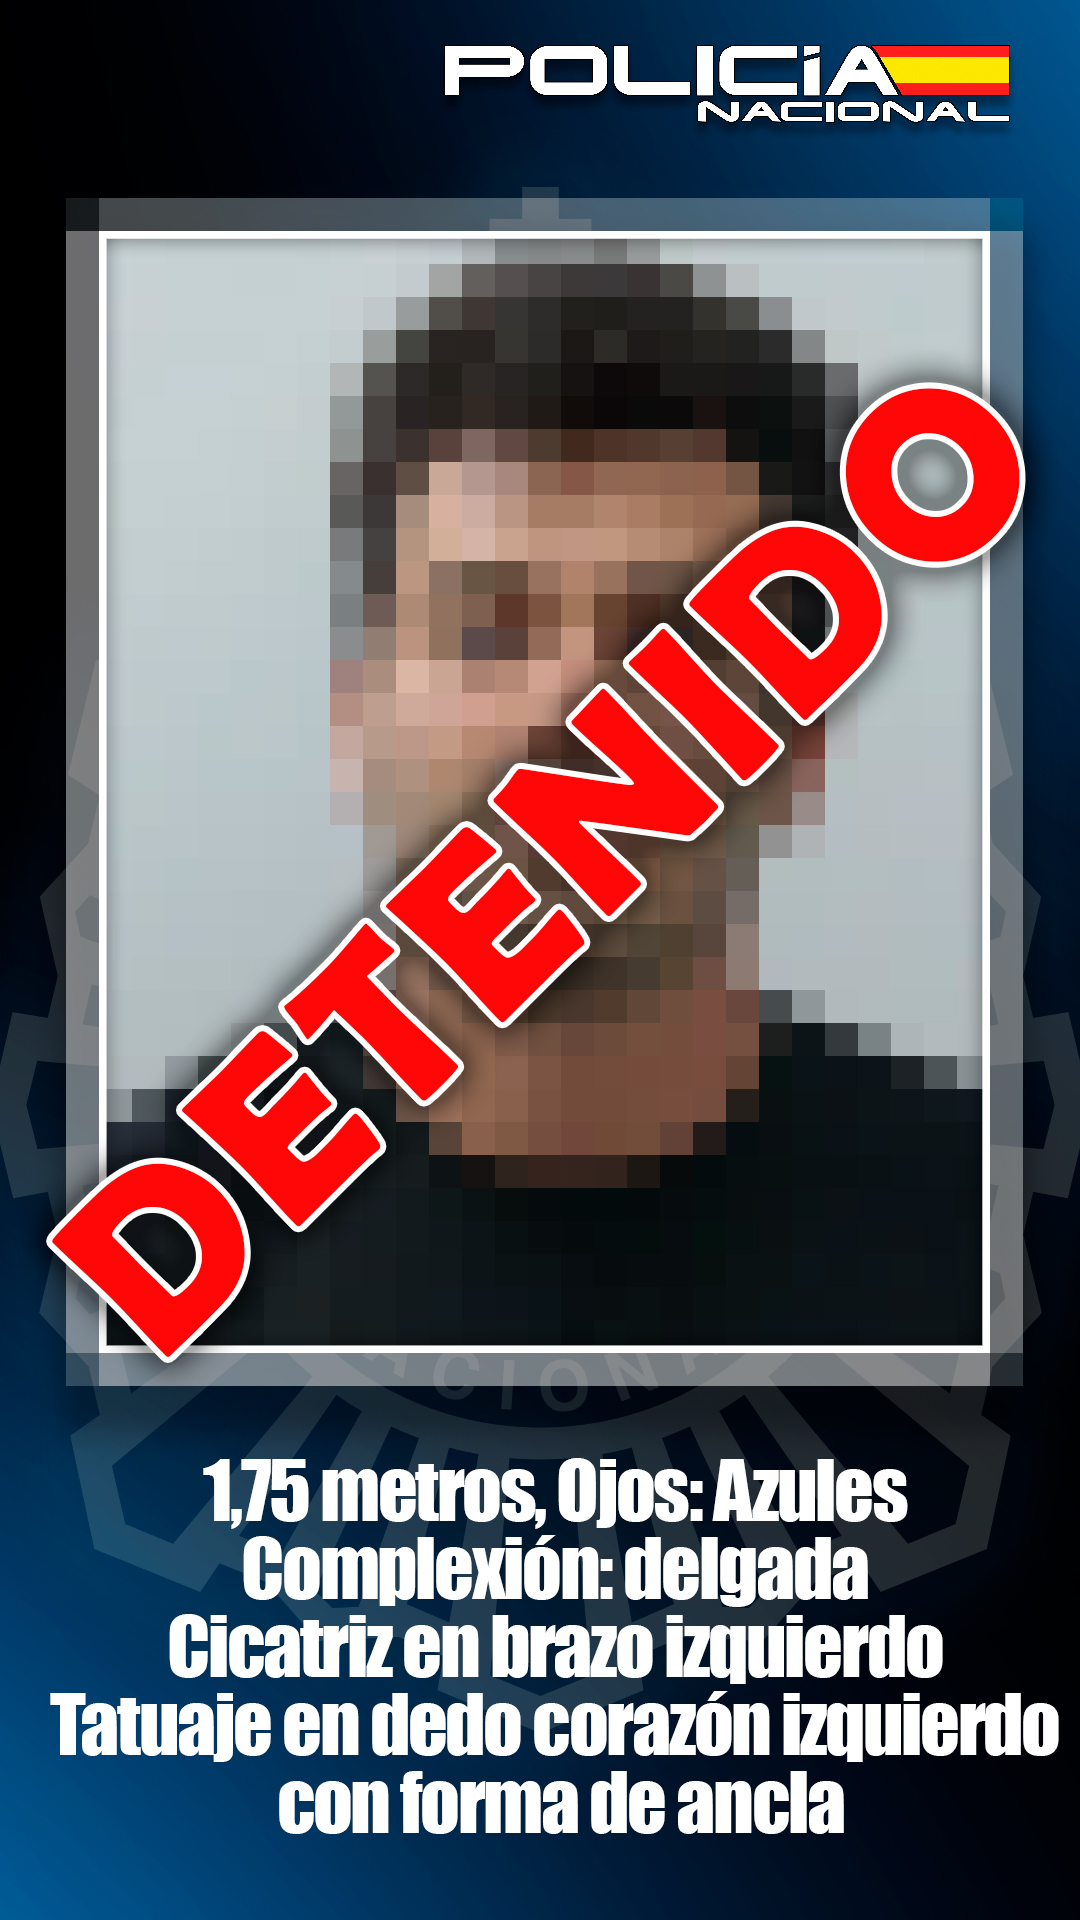 La Policía Nacional detiene a uno de “Los 10 más buscados” en España por un asesinato cometido en México